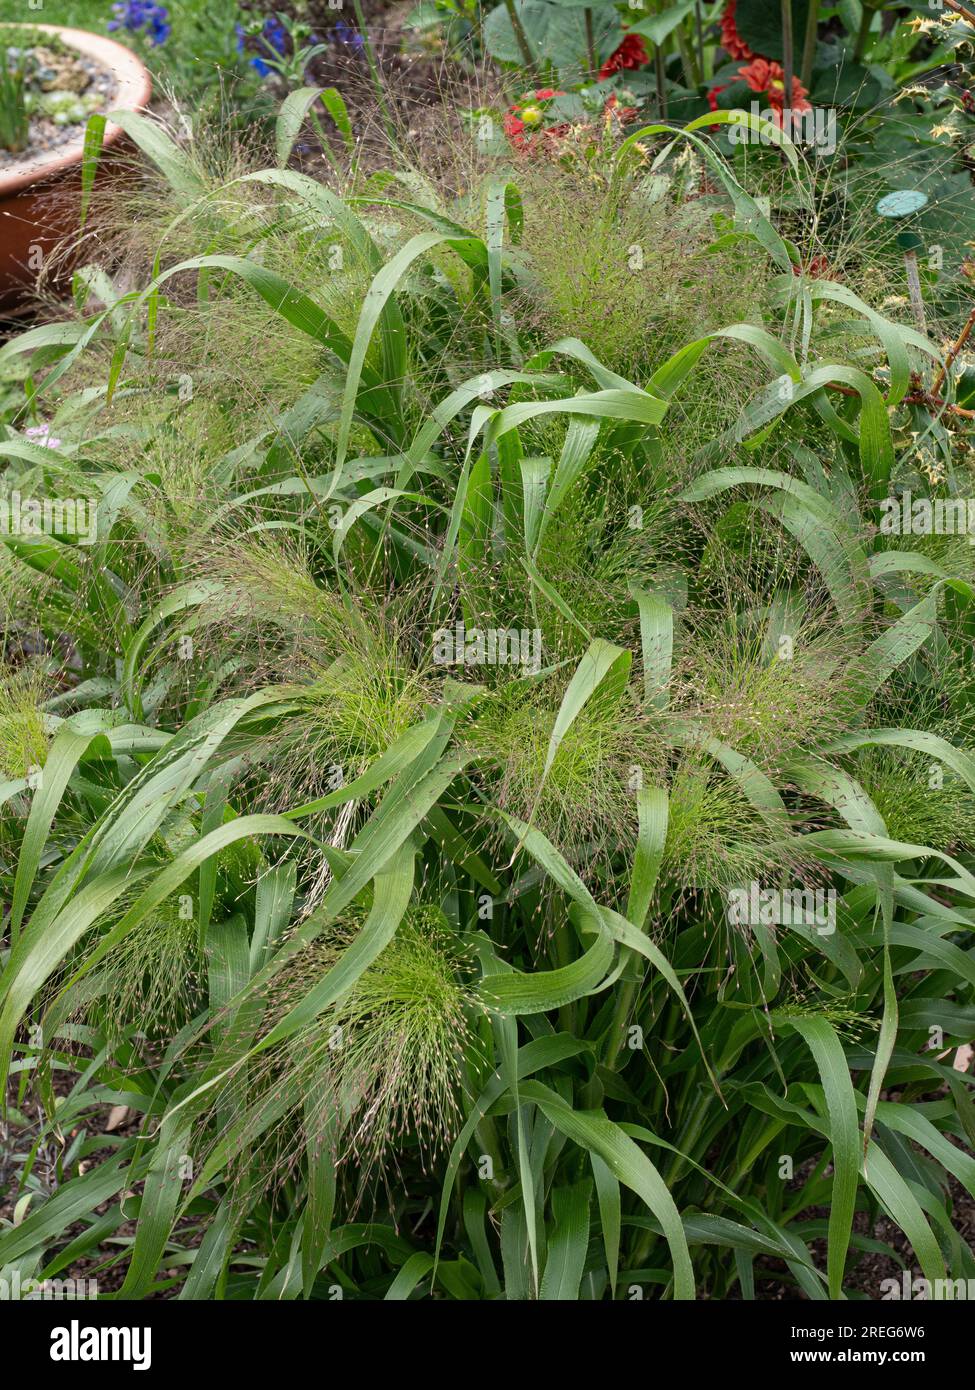 Die luftigen, zarten Blumenköpfe und üppigen grünen Blätter des Grases Panicum elegans „Spinkles“ Stockfoto